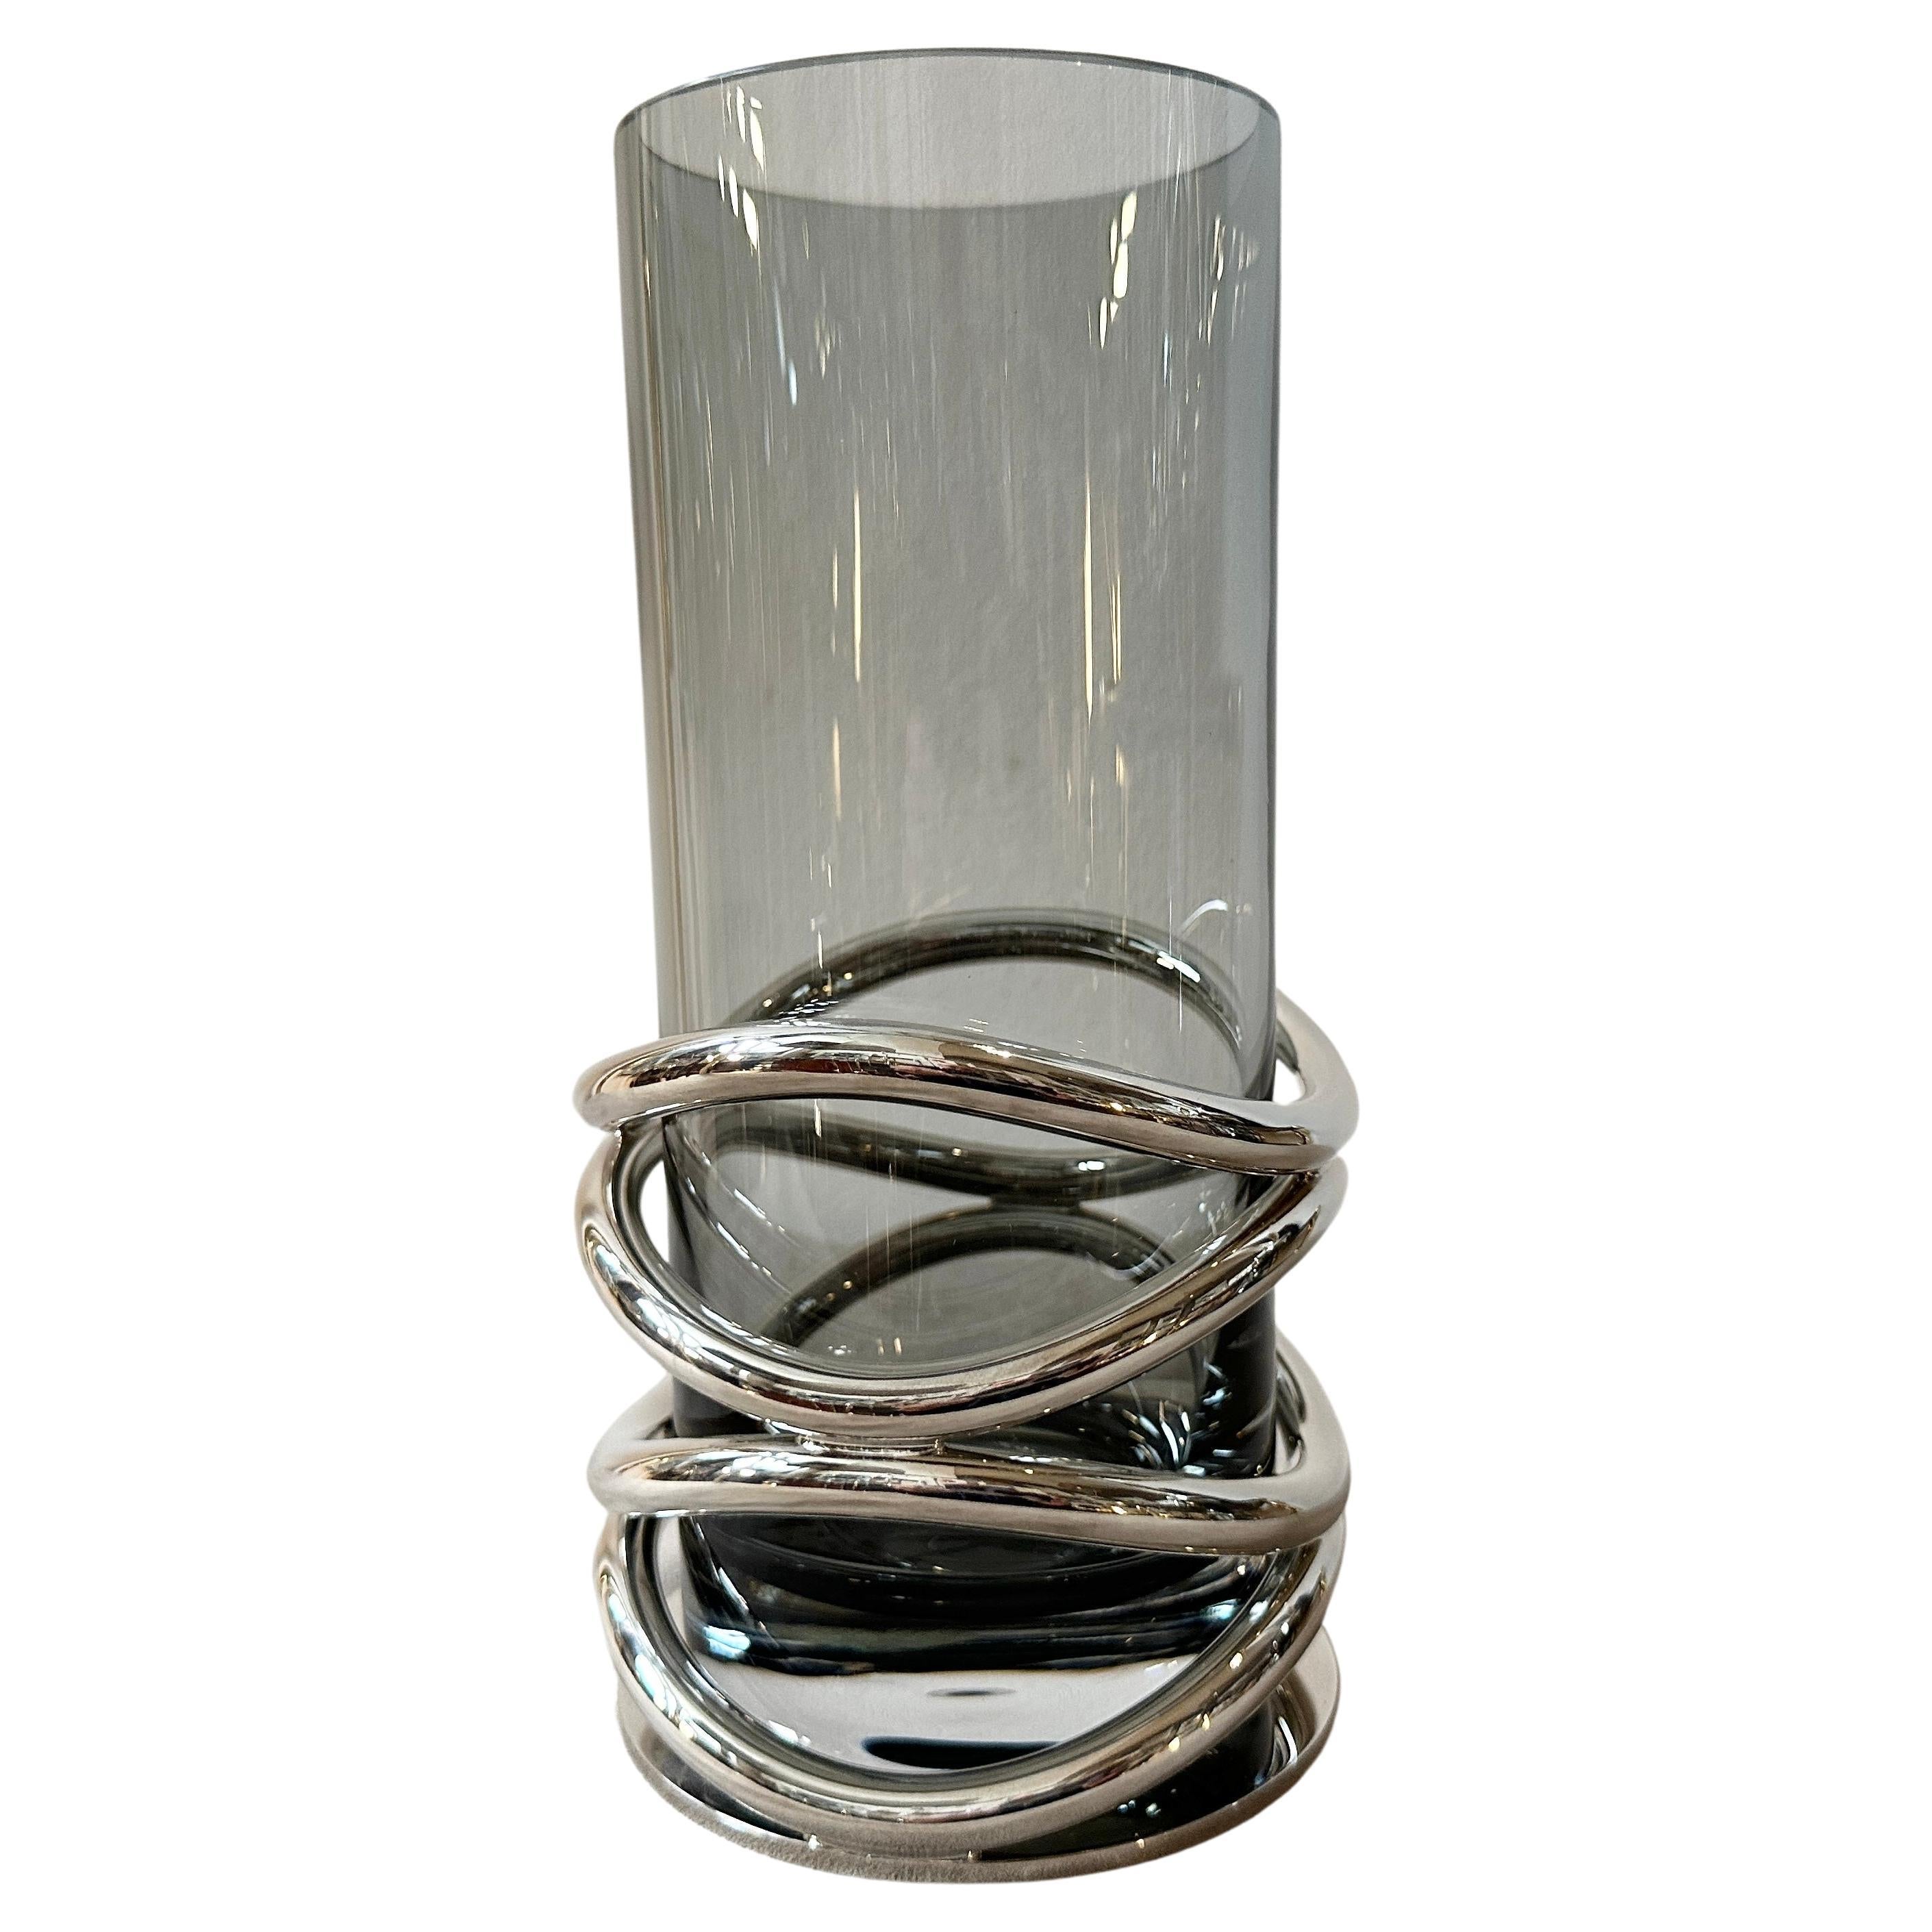 Vase français Thomas moderniste des années 1990 en métal argenté et verre fumé par Christofle